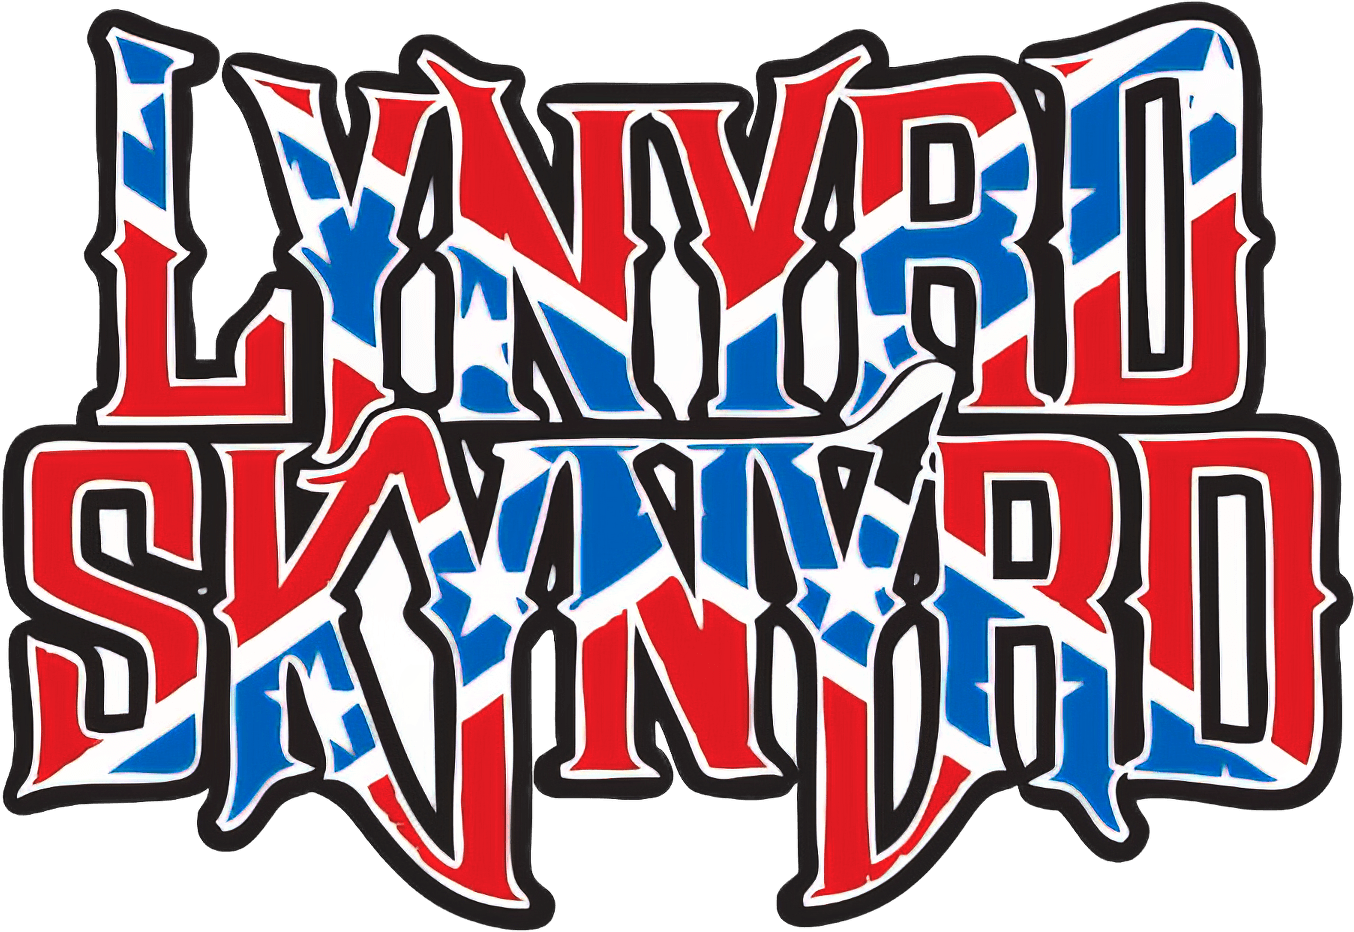 Lynyrd Skynyrd : Live at Winterland 1975 logo